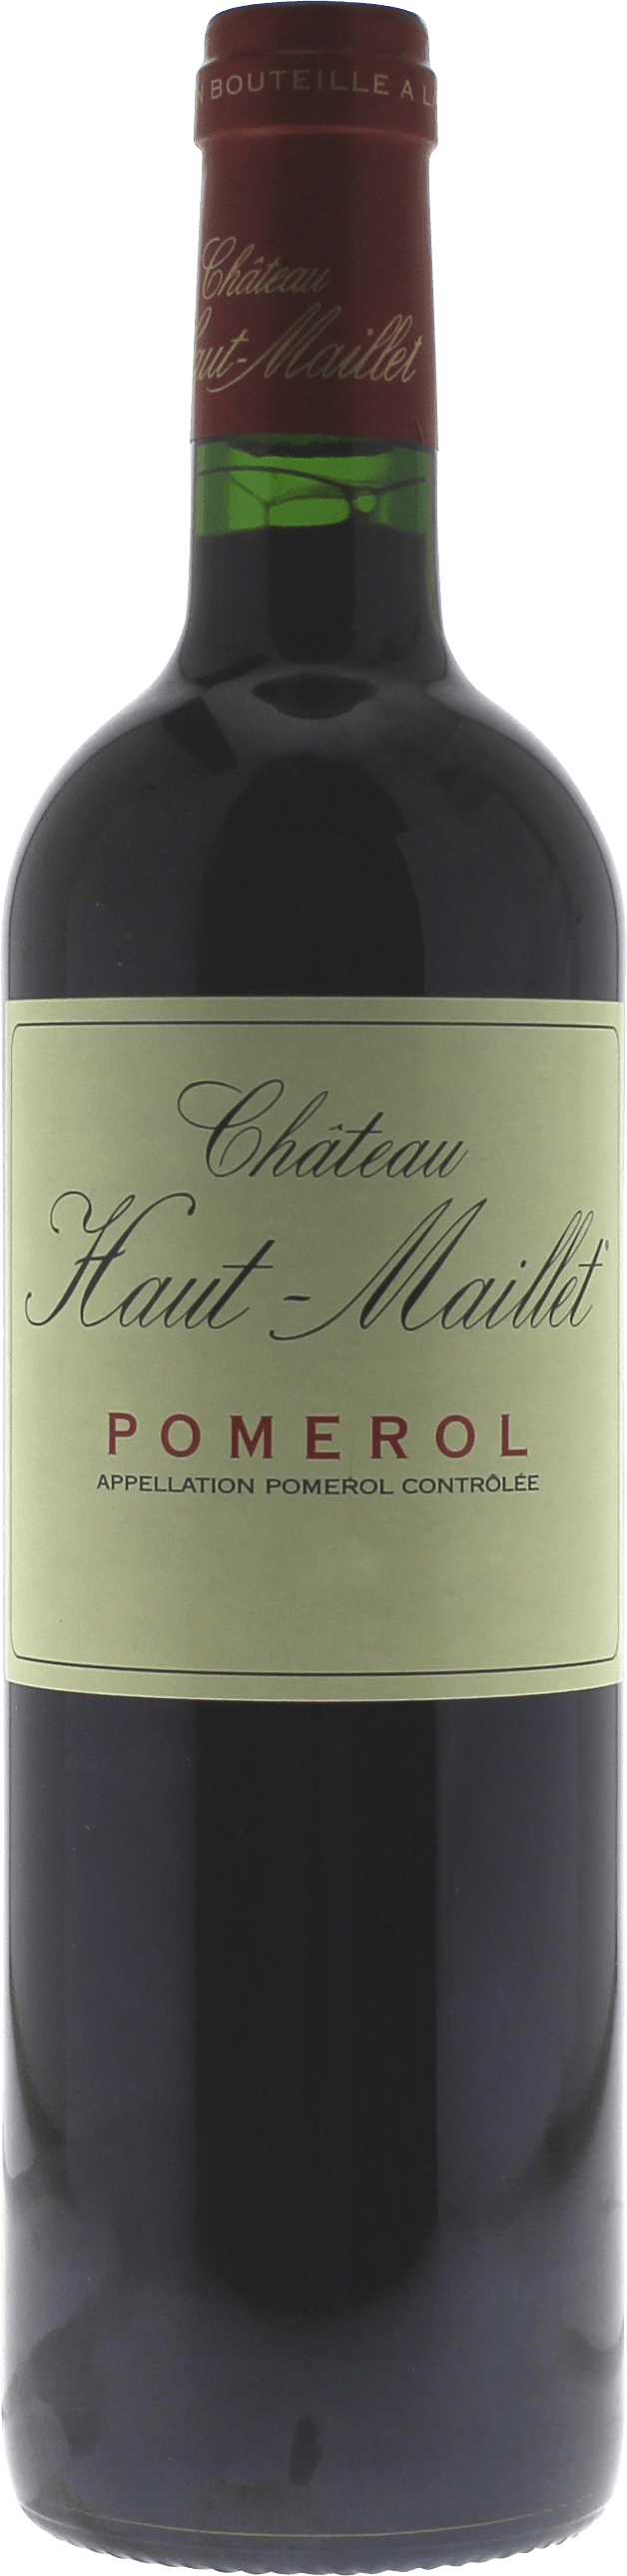 Haut maillet 2016  Pomerol, Bordeaux rouge